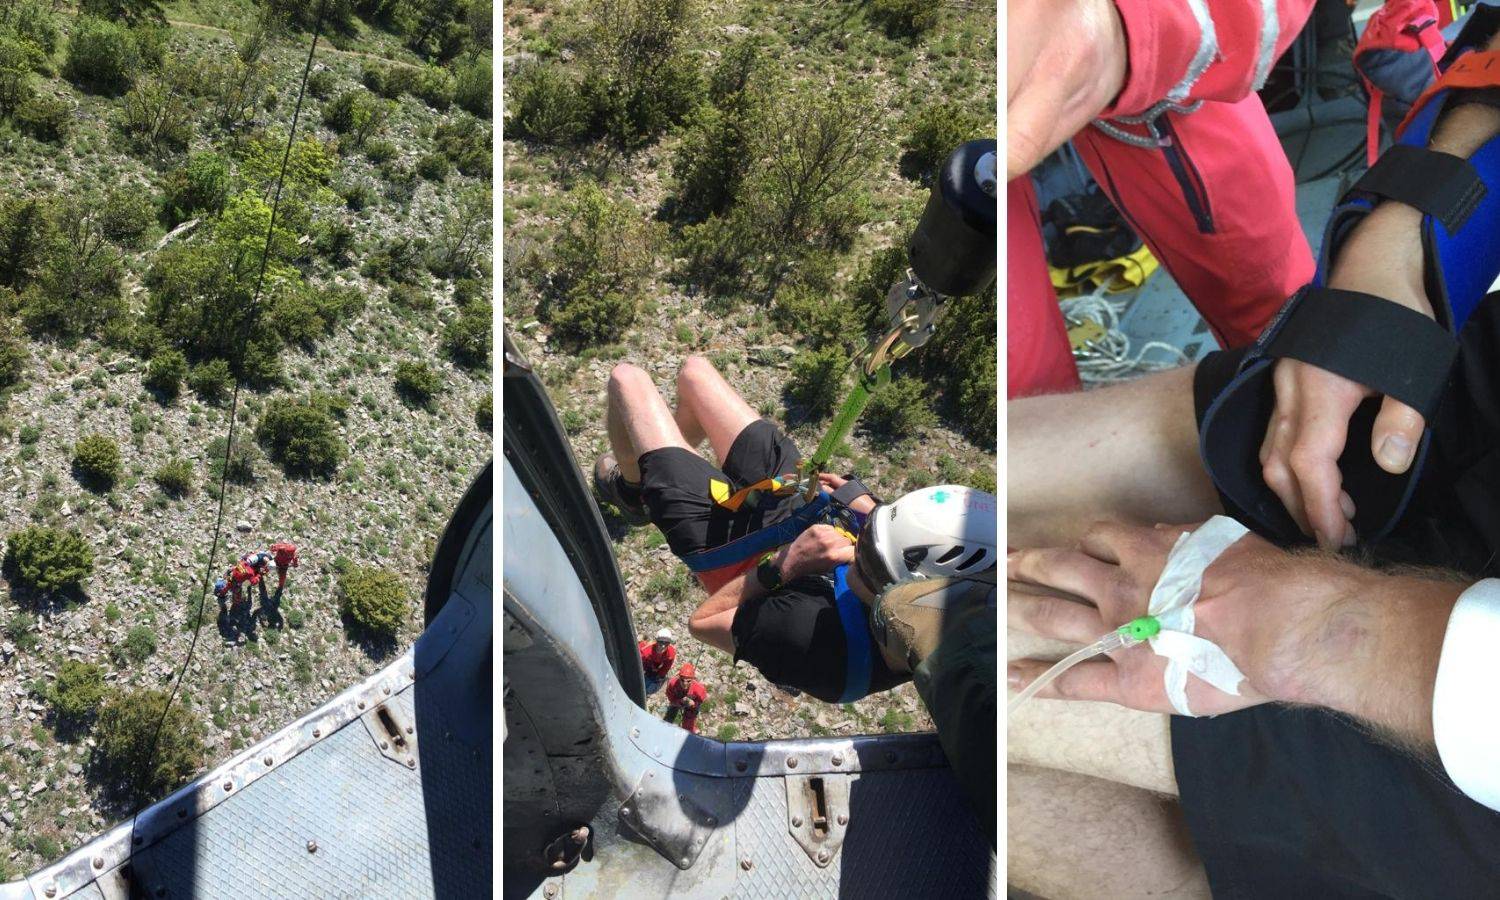 Dramatična akcija na Velebitu: Ugrizao ga poskok, poslali su helikopter da spase mladića